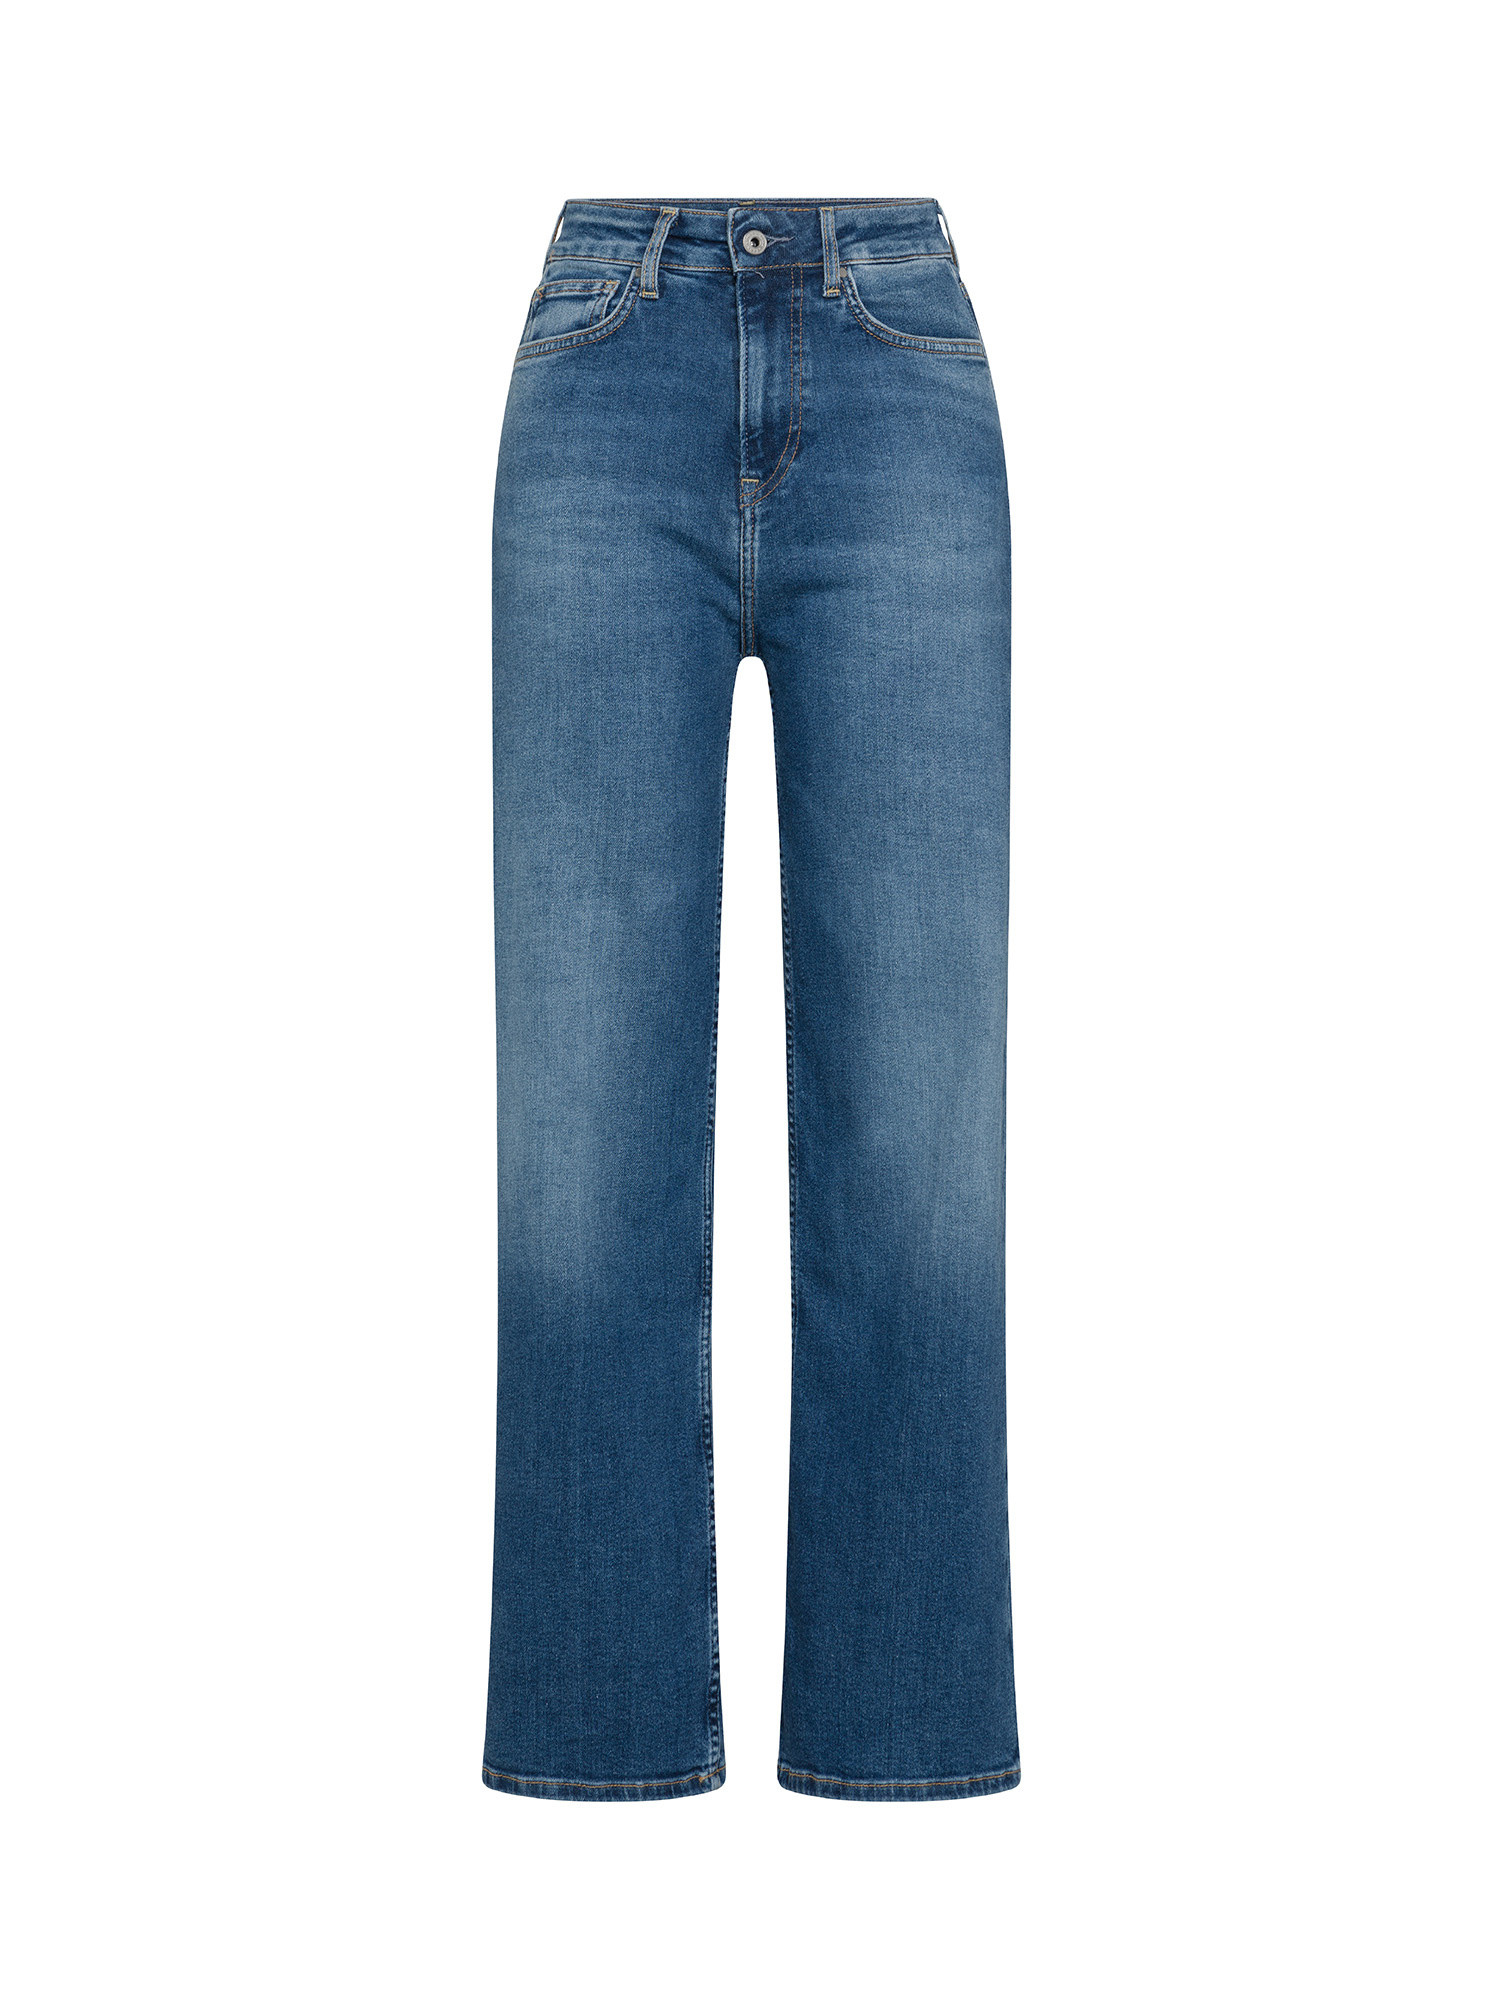 Pepe Jeans - Five pocket jeans, Denim, large image number 0